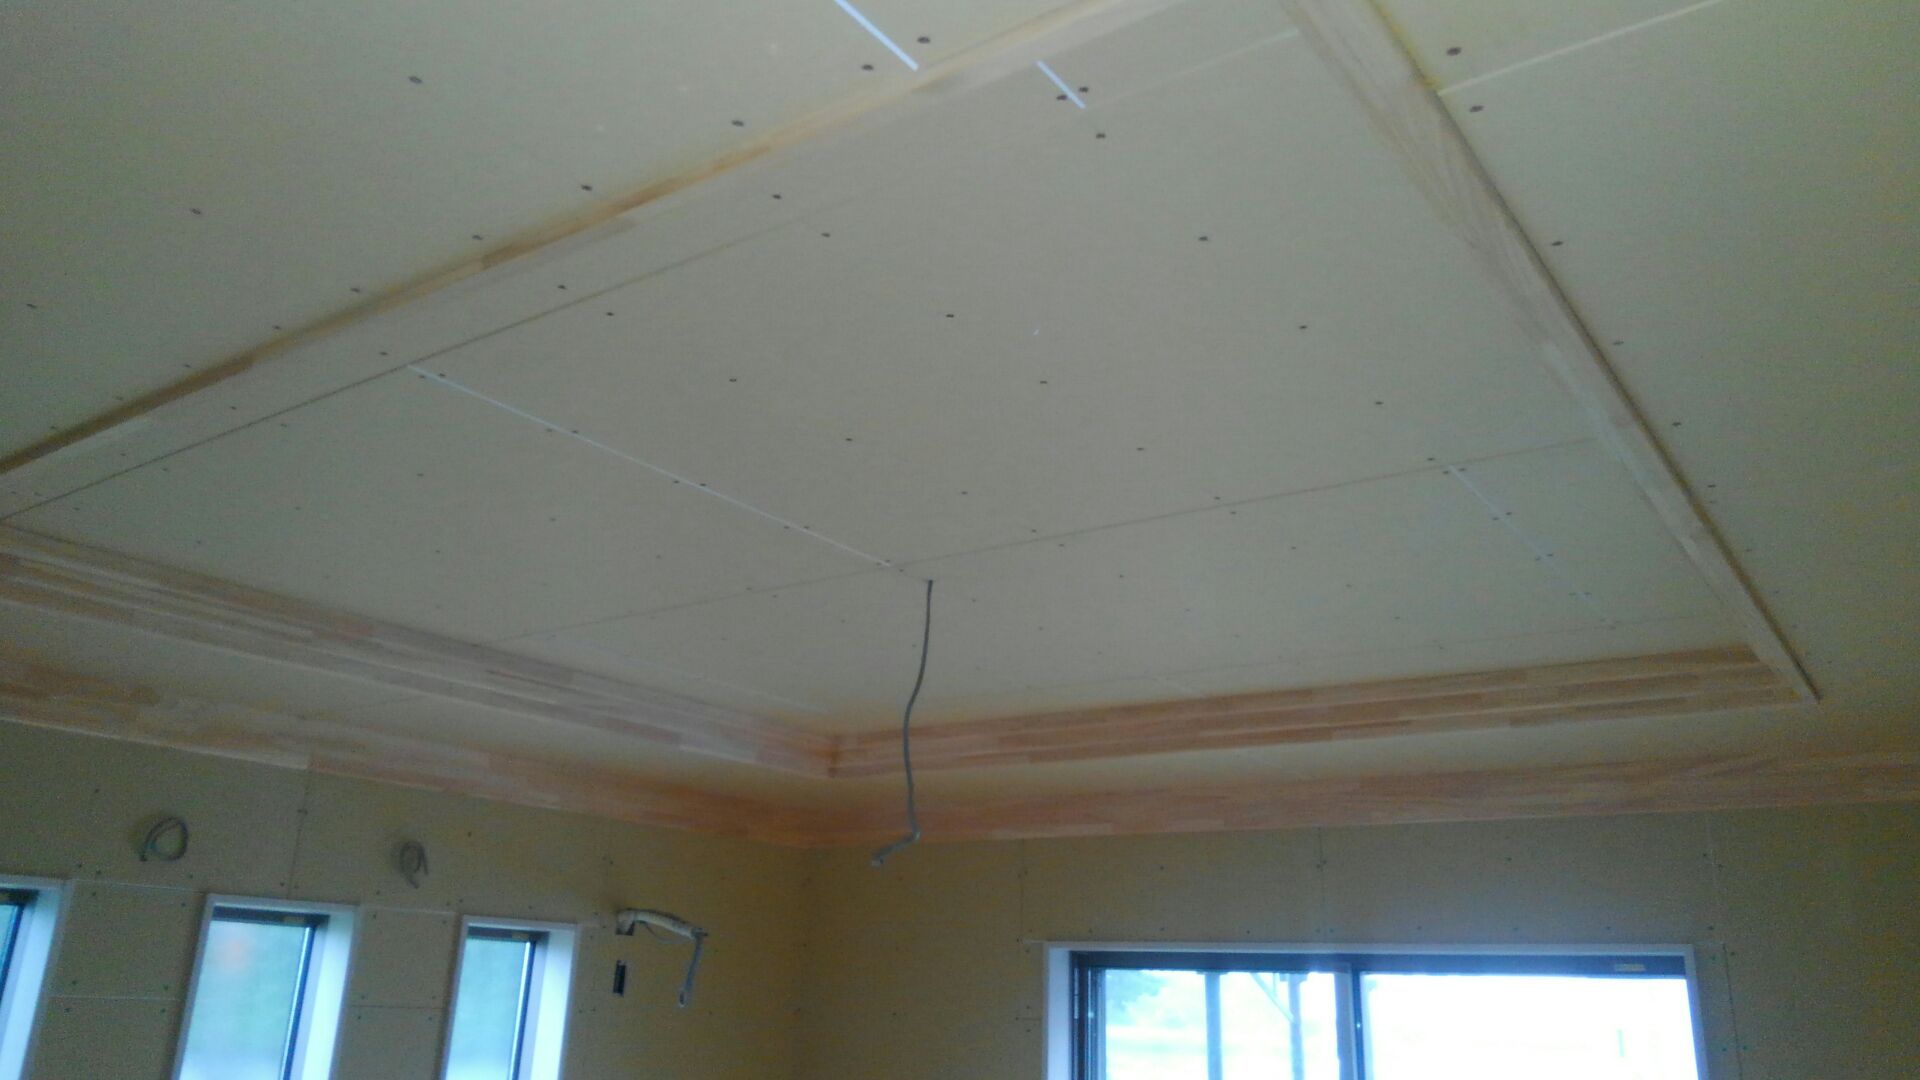 奥様の部屋の木工事が終わりました。天井の仕組みや廻縁（まわりぶち※壁と天井の境に用いられる部材）は、柔らかみのある集成パイン材を使って仕上げました。奥様のご希望通りになりました。